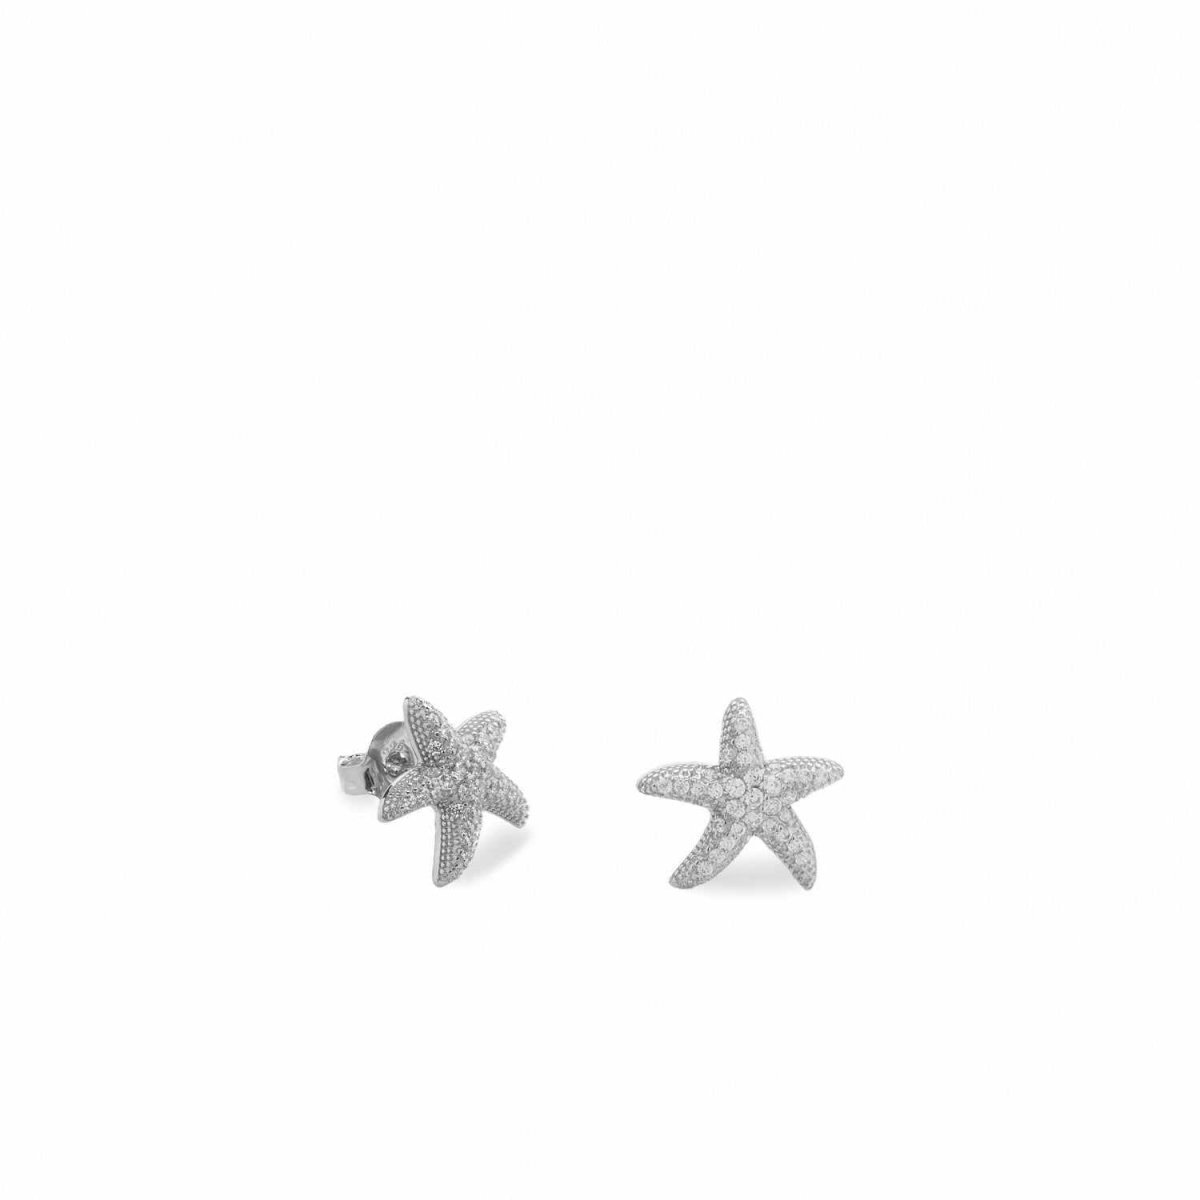 Earrings - Small silver starfish motif earrings